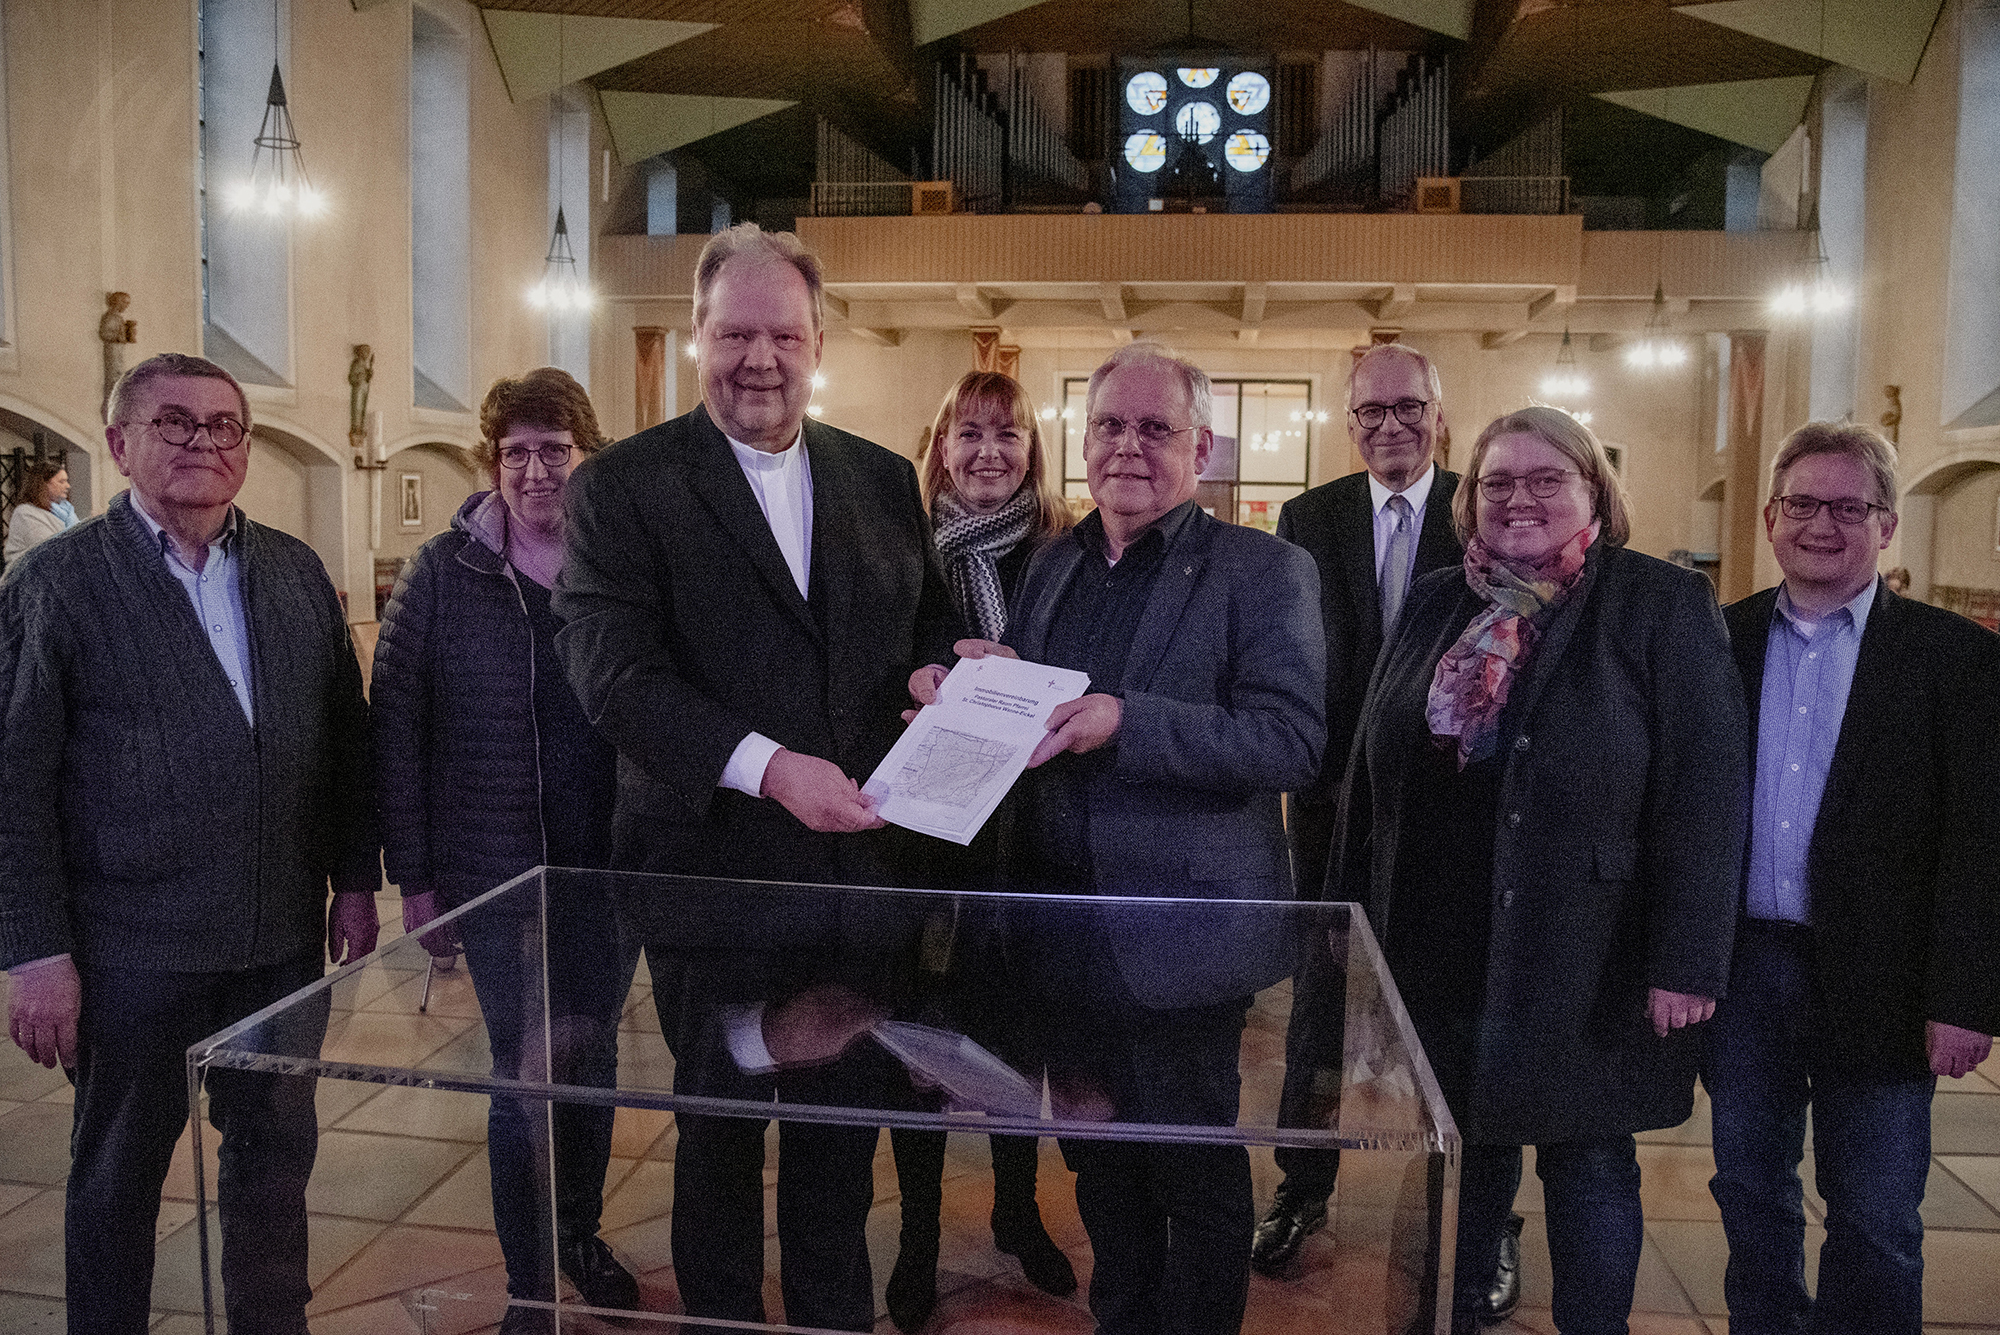 Erste Immobilienvereinbarung unter Dach und Fach. Verwaltung des Erzbistums Paderborn übergibt Katholiken in Wanne-Eickel gegengezeichnetes Konzept zum zukünftigen Einsatz ihrer kirchlichen Gebäude.